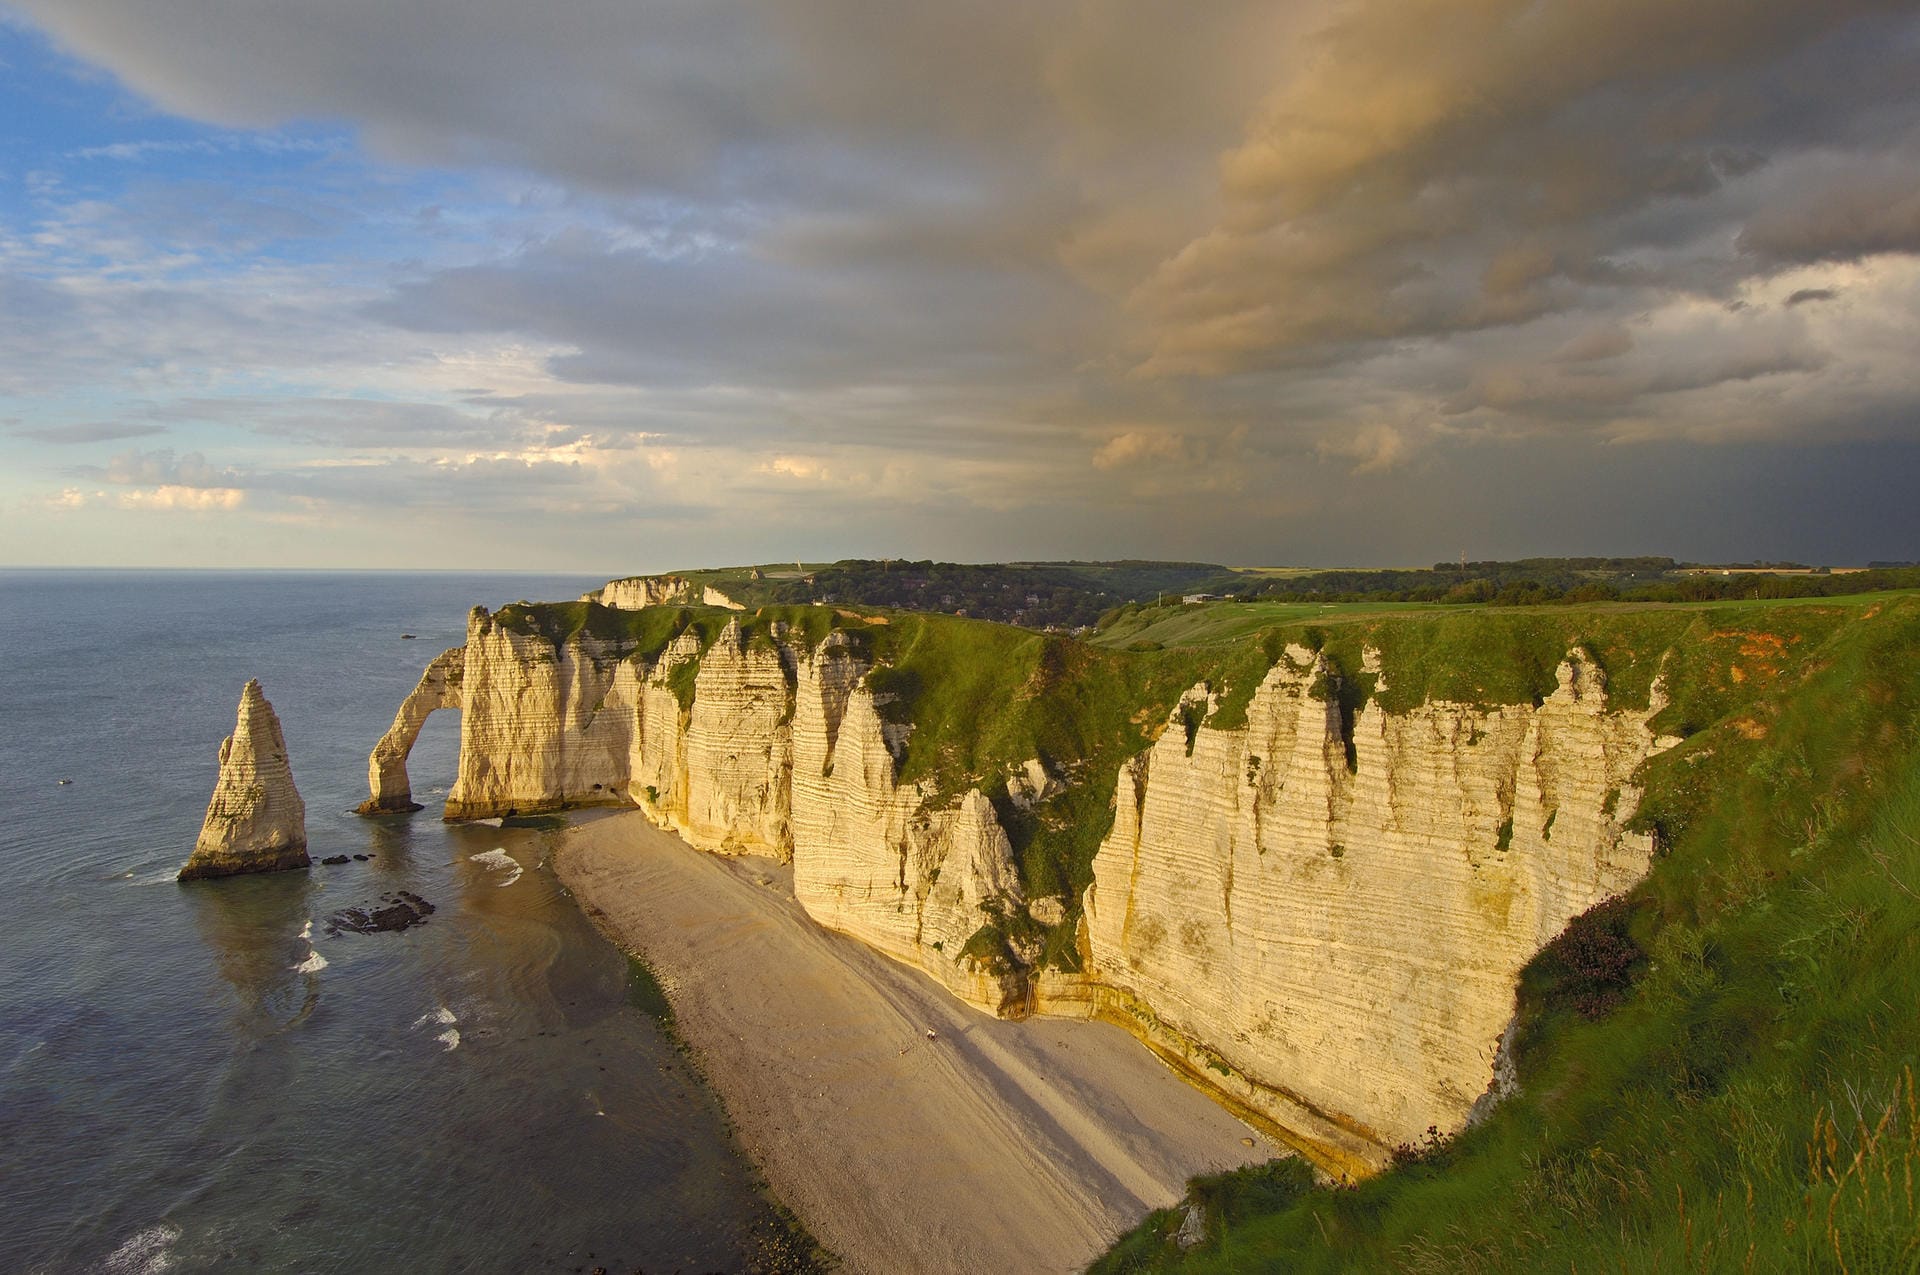 Die Alabasterküste in der Normandie: Die Felsformationen entstanden vor Millionen von Jahren aus Feuerstein und weißer Kreide.